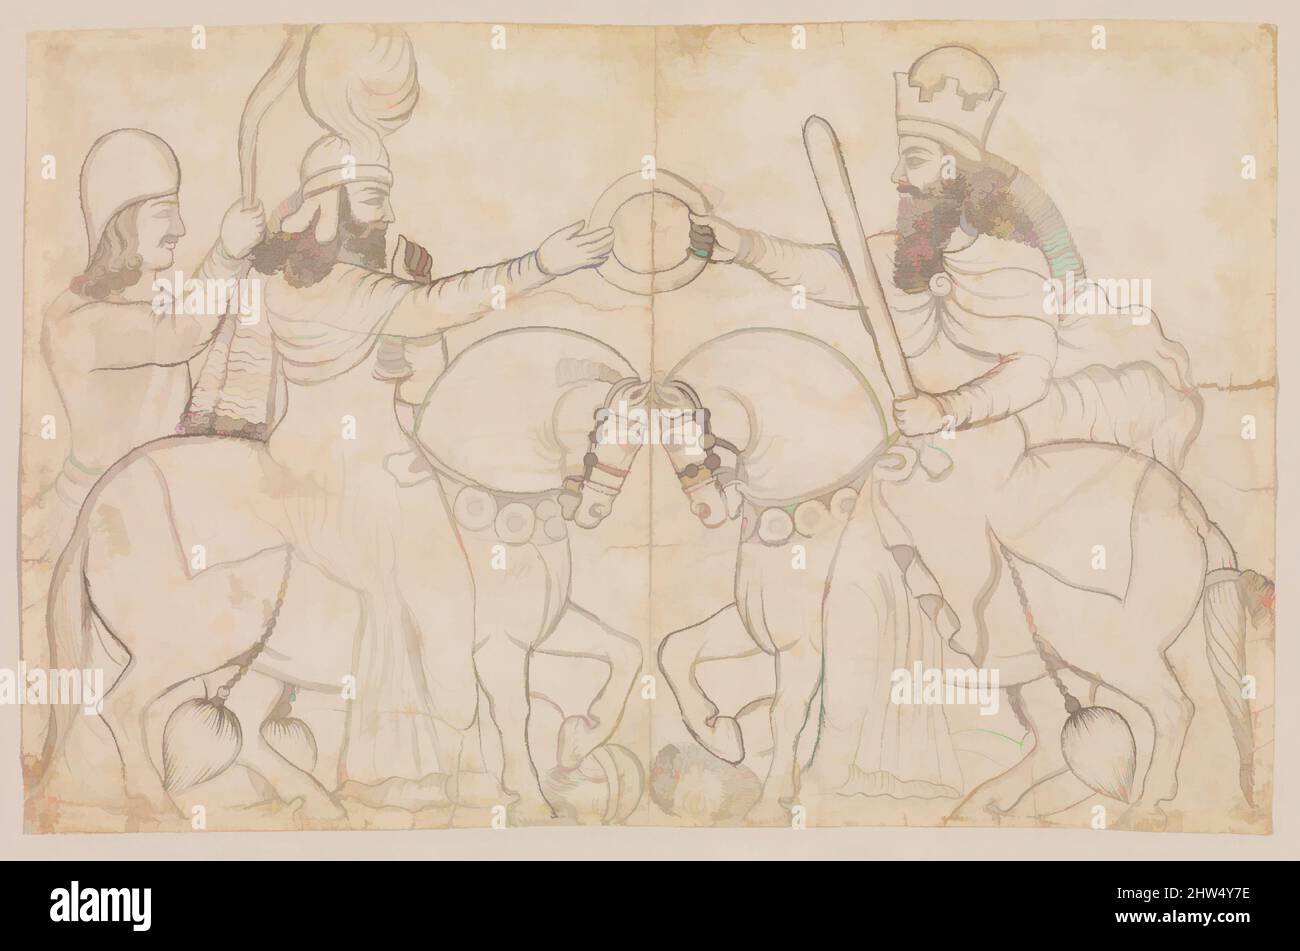 Art inspiré par le dessin du relief de roche sasanien: Ardashir I (r. A.D. 224-241) et la divinité zoroastrienne Ahura Mazda à Naqsh-i Rustam, sud de l'Iran, A.D. 1860 (dessin), Iran, Qajar, Papier, crayon, encre, 12,76 x 15,75 cm (32,41 x 40,01 cm), Paper-Graphics, Lutf 'Ali Khan (1797–1869, œuvres classiques modernisées par Artotop avec une touche de modernité. Formes, couleur et valeur, impact visuel accrocheur sur l'art émotions par la liberté d'œuvres d'art d'une manière contemporaine. Un message intemporel qui cherche une nouvelle direction créative. Artistes qui se tournent vers le support numérique et créent le NFT Artotop Banque D'Images